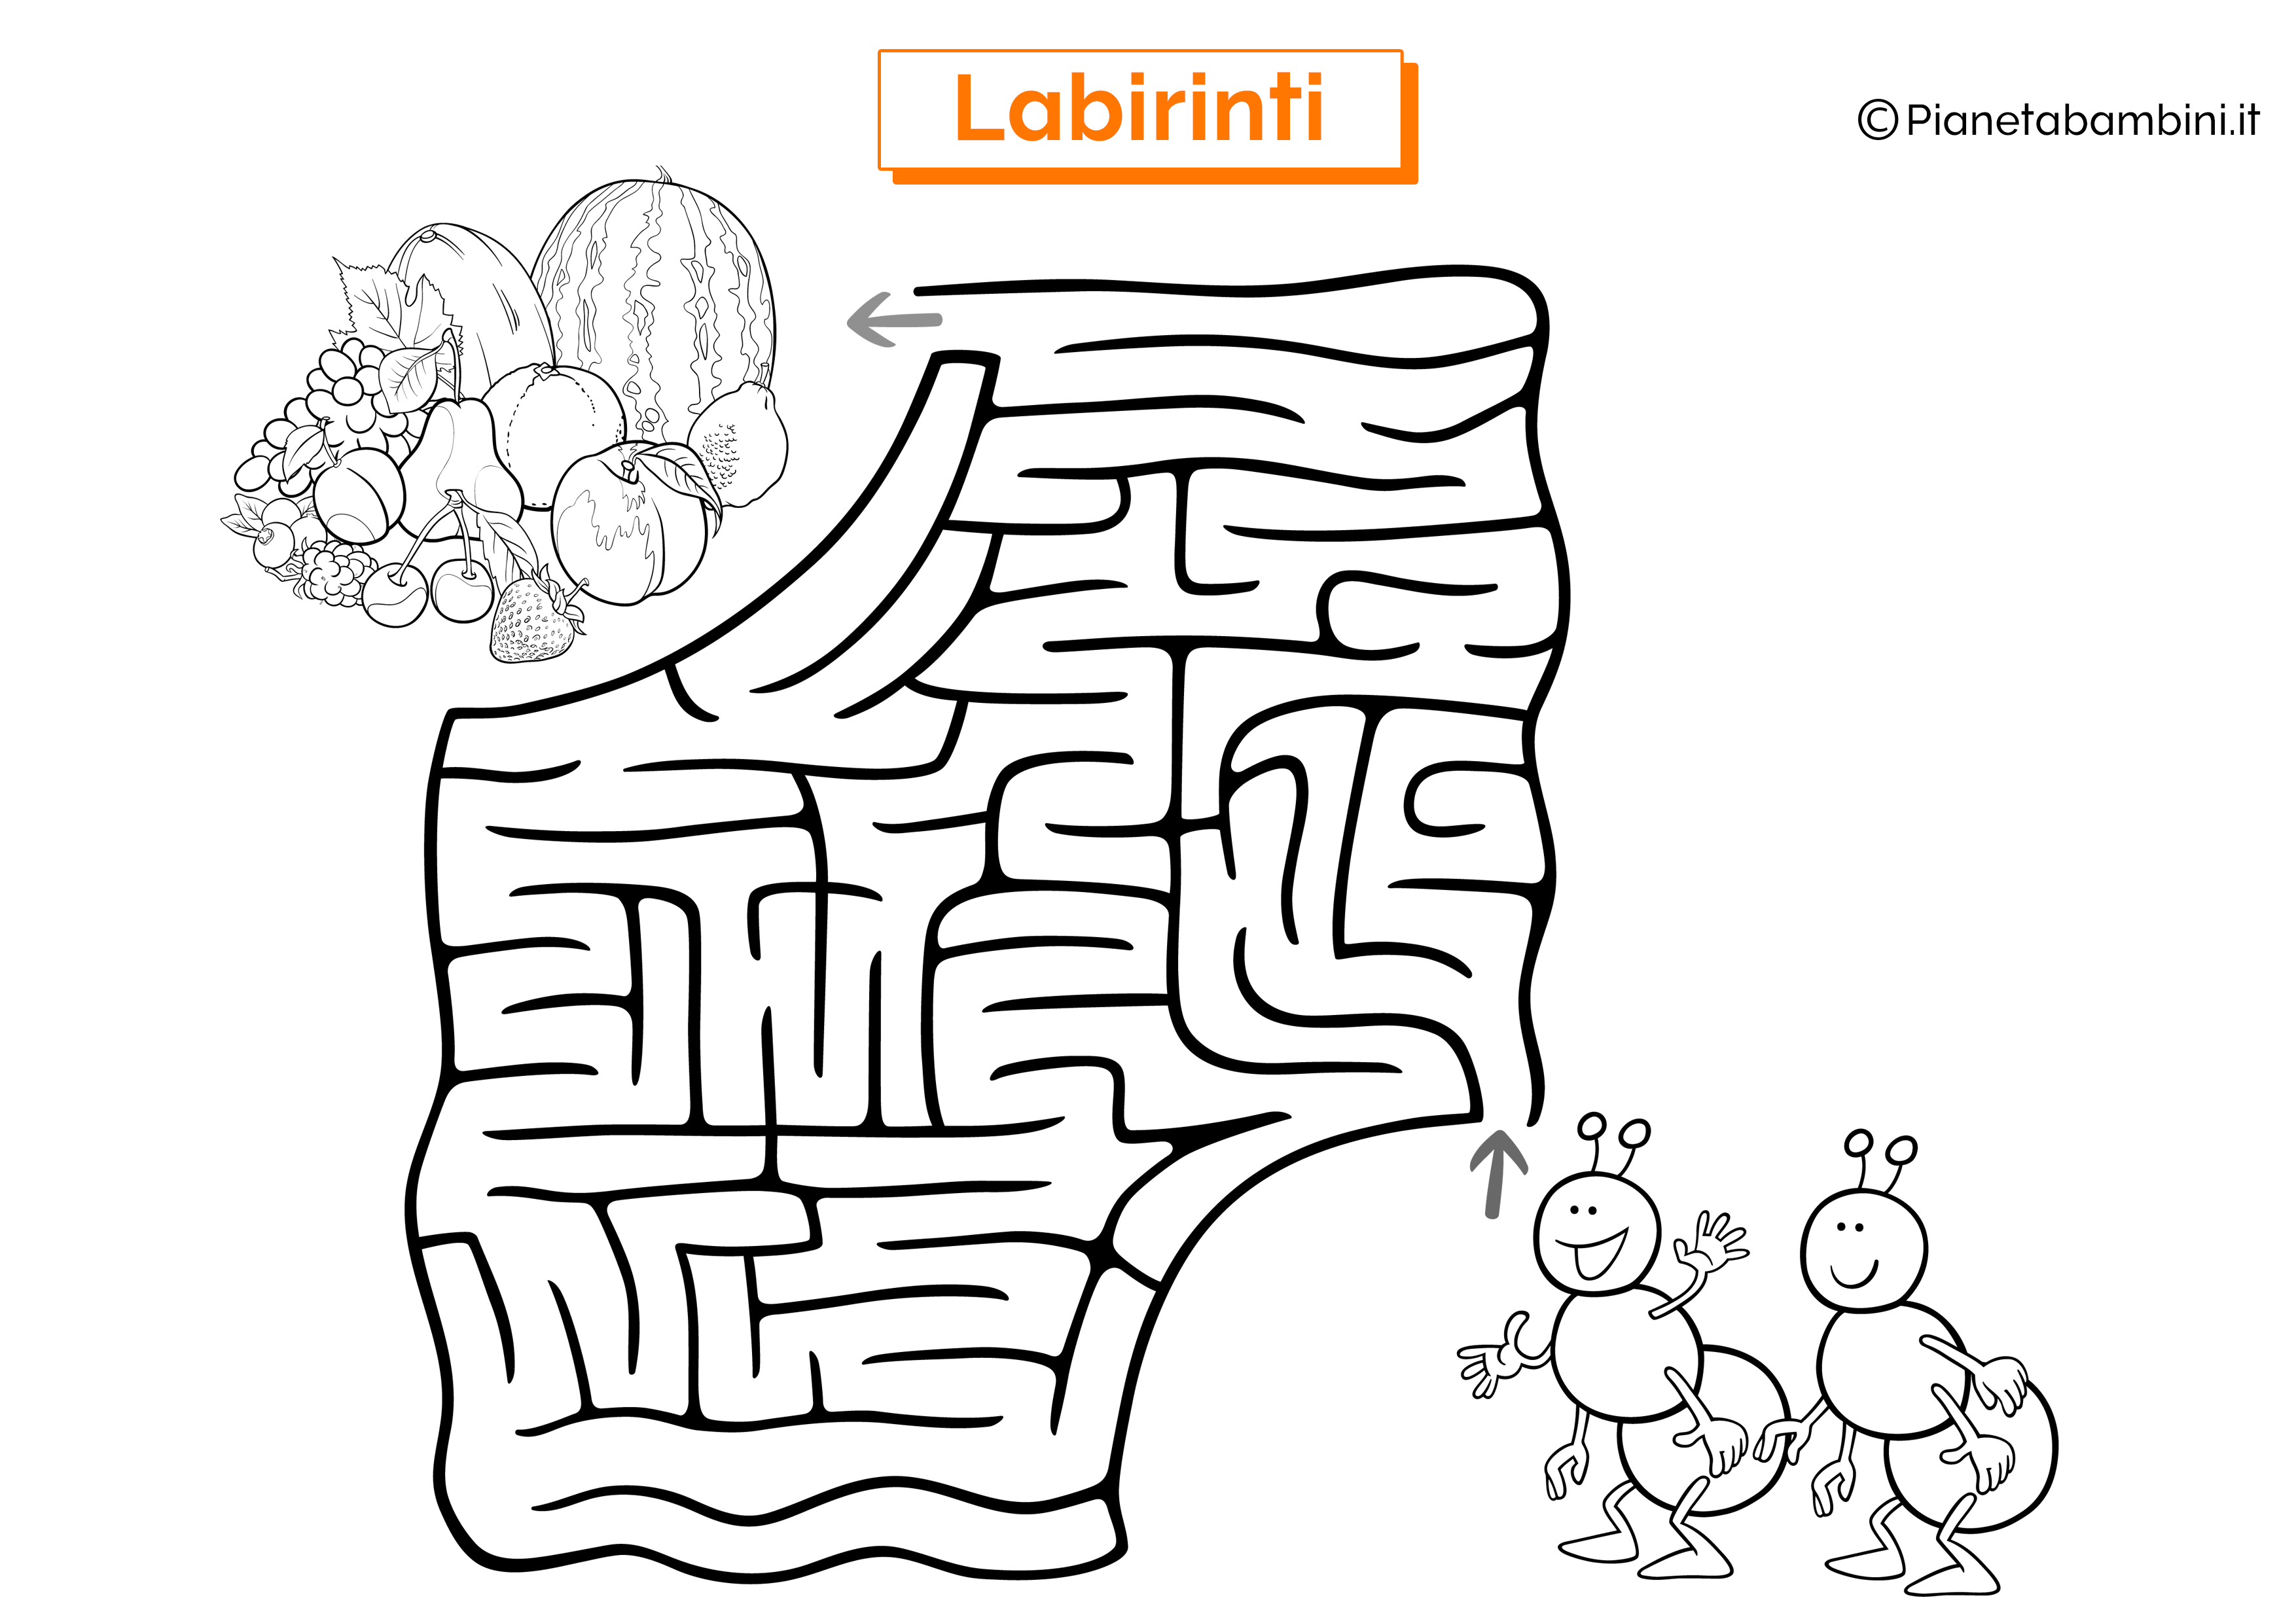 Labirinto con formiche e frutta da stampare